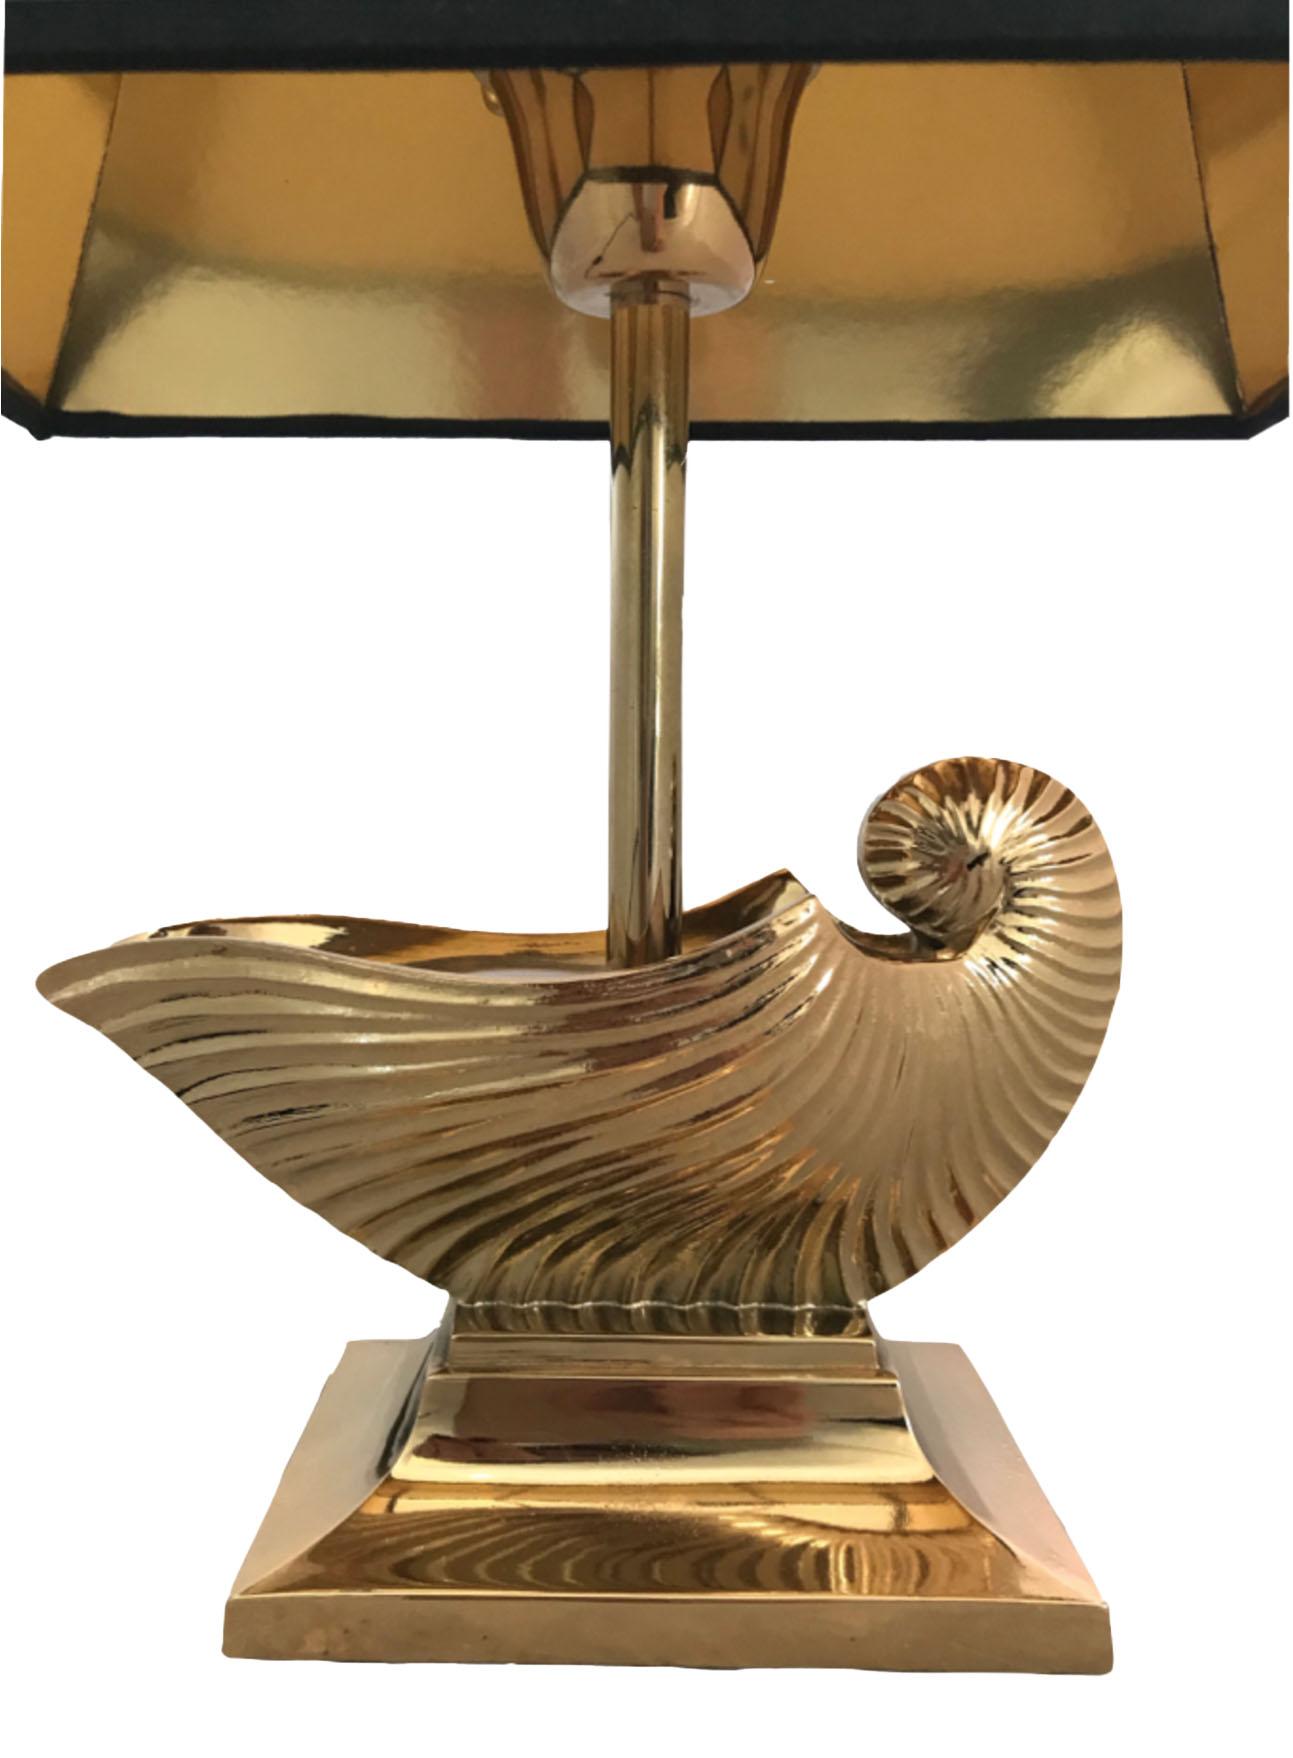 Französische Messing Metall Nautilus Muschel Tischlampe Maison Charles

Schwarzer Schirm mit goldener Innenseite ist im Lieferumfang enthalten.